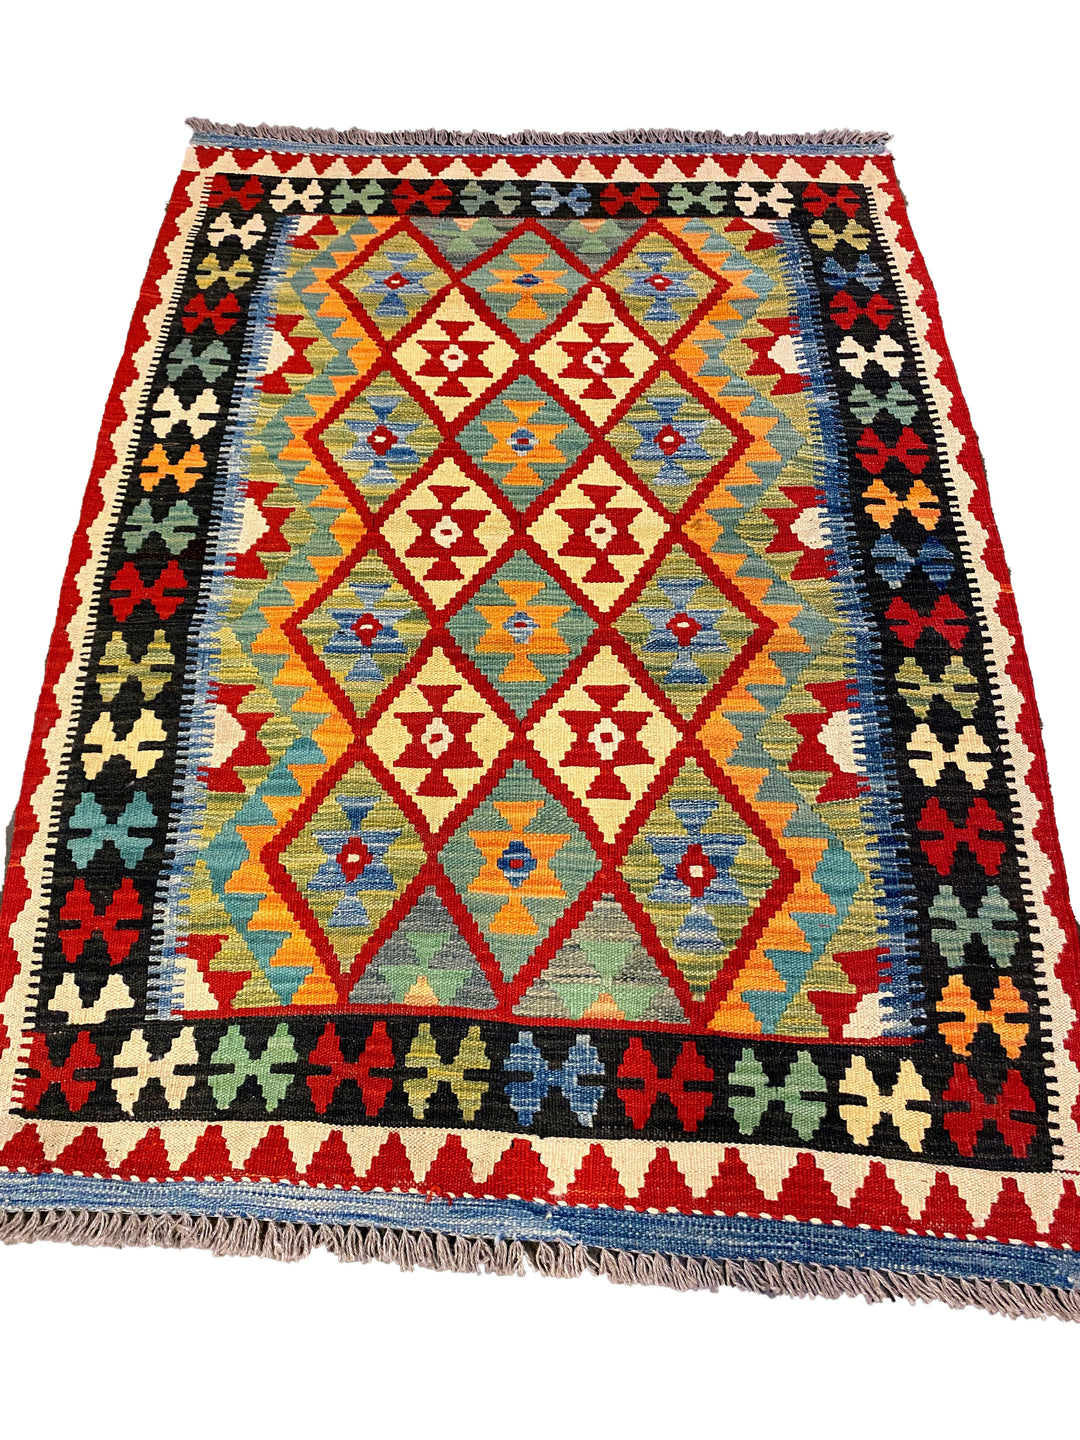 Naveah - Size: 4.7 x 3.5 - Imam Carpet Co